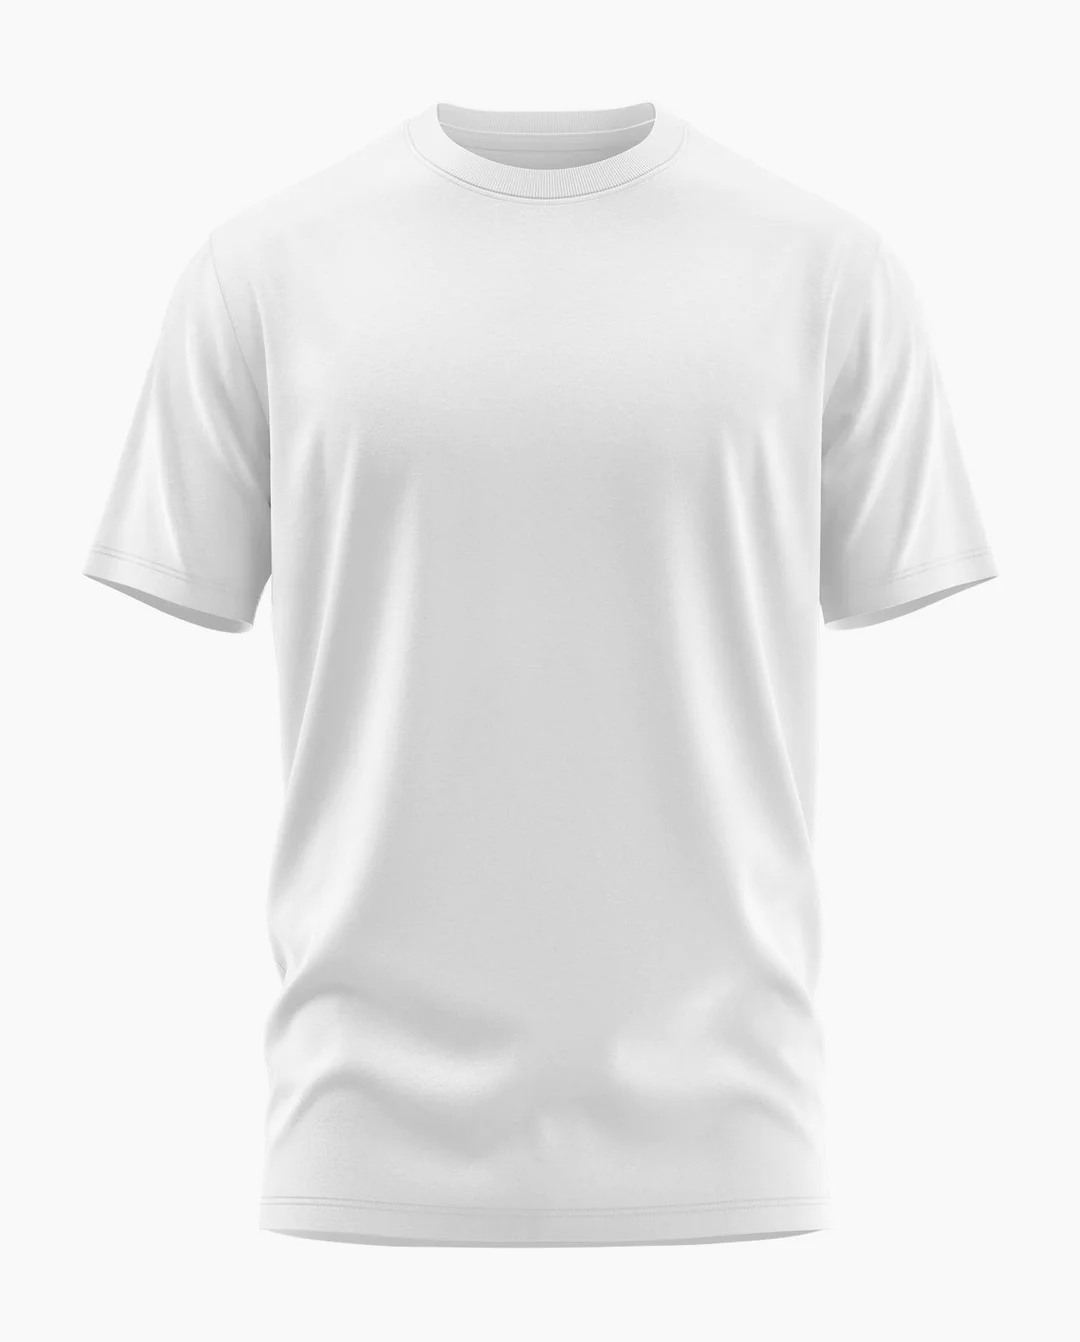 Fabstieve Men's Cotton Plain T-Shirts, Size M ( VK-216)